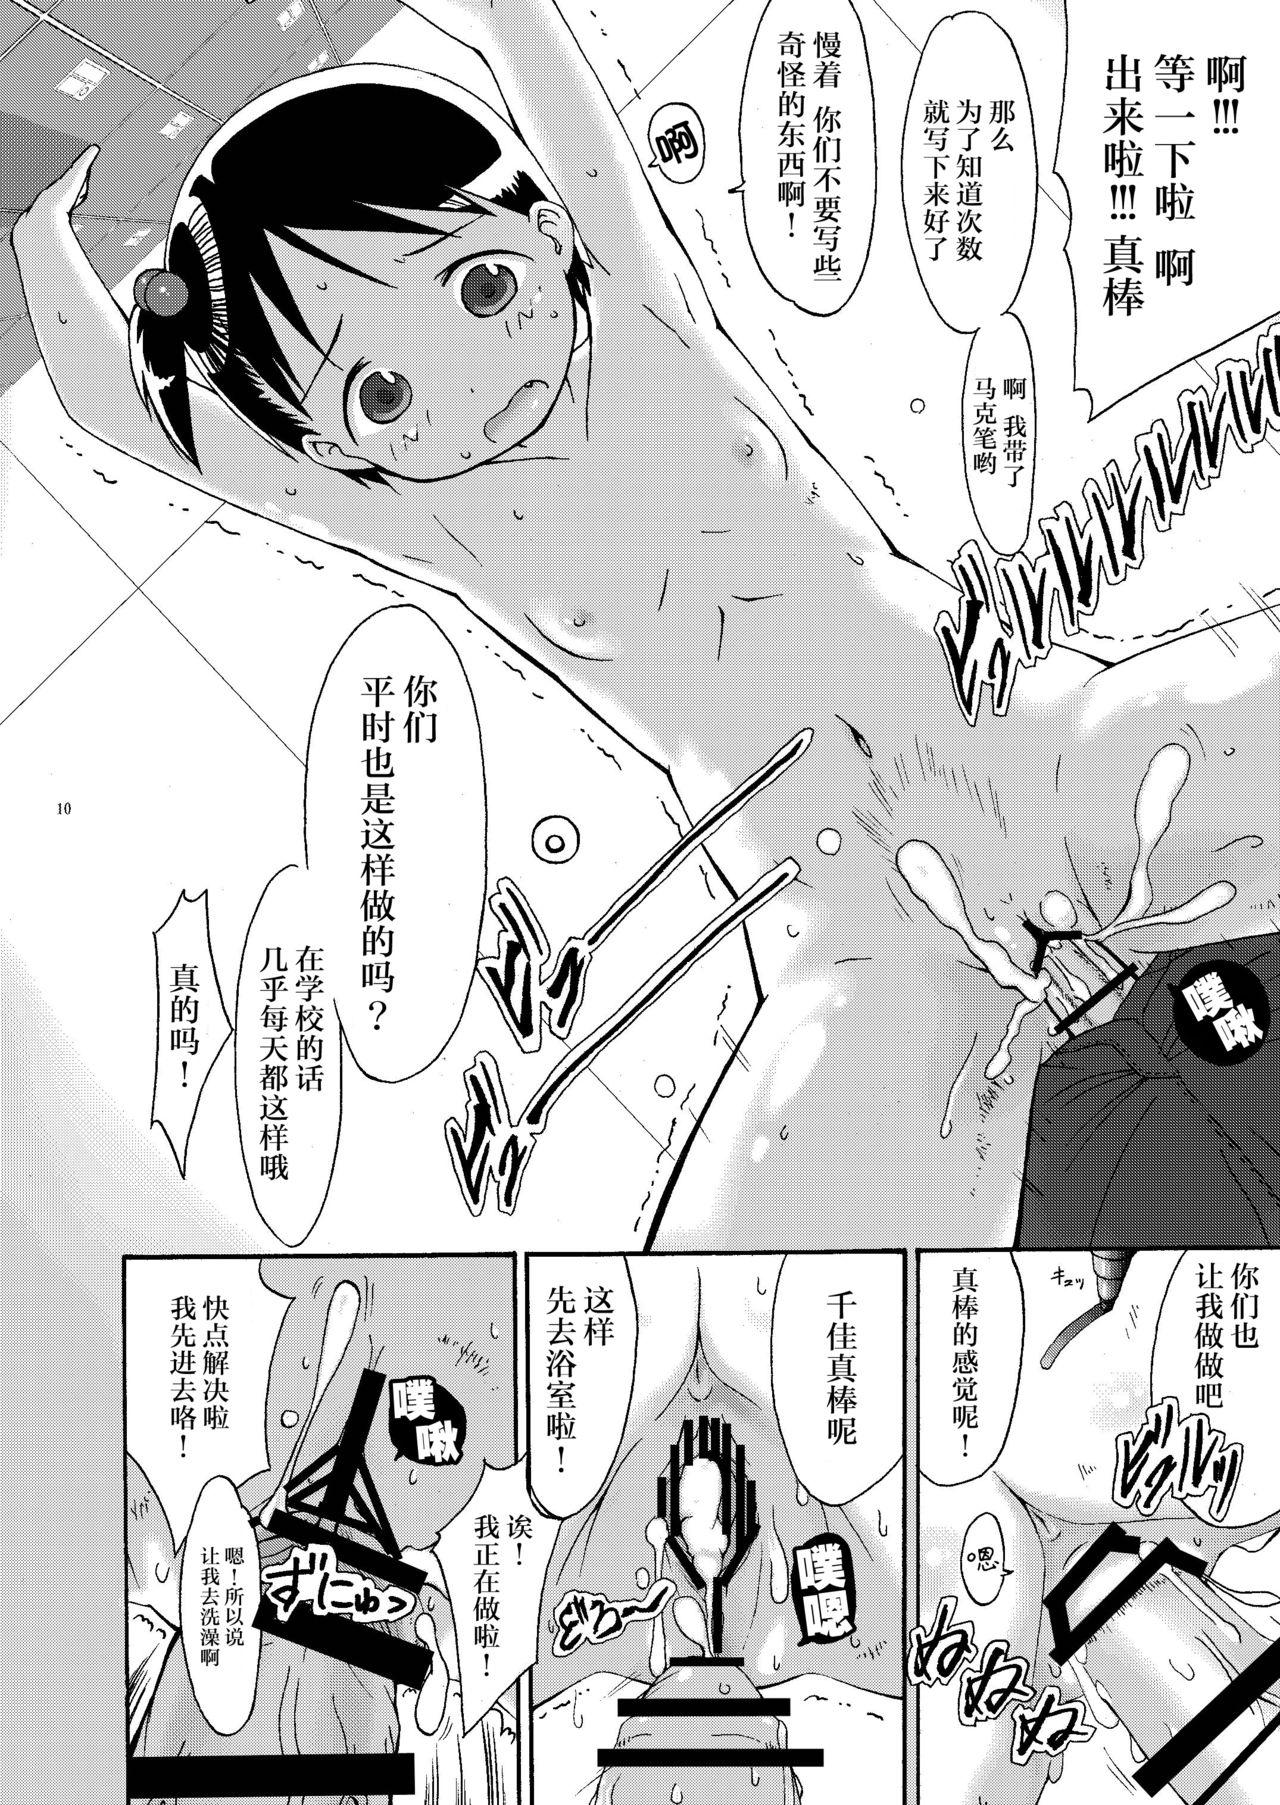 Cfnm mashimaro ism extra - Ichigo mashimaro Deepthroat - Page 11